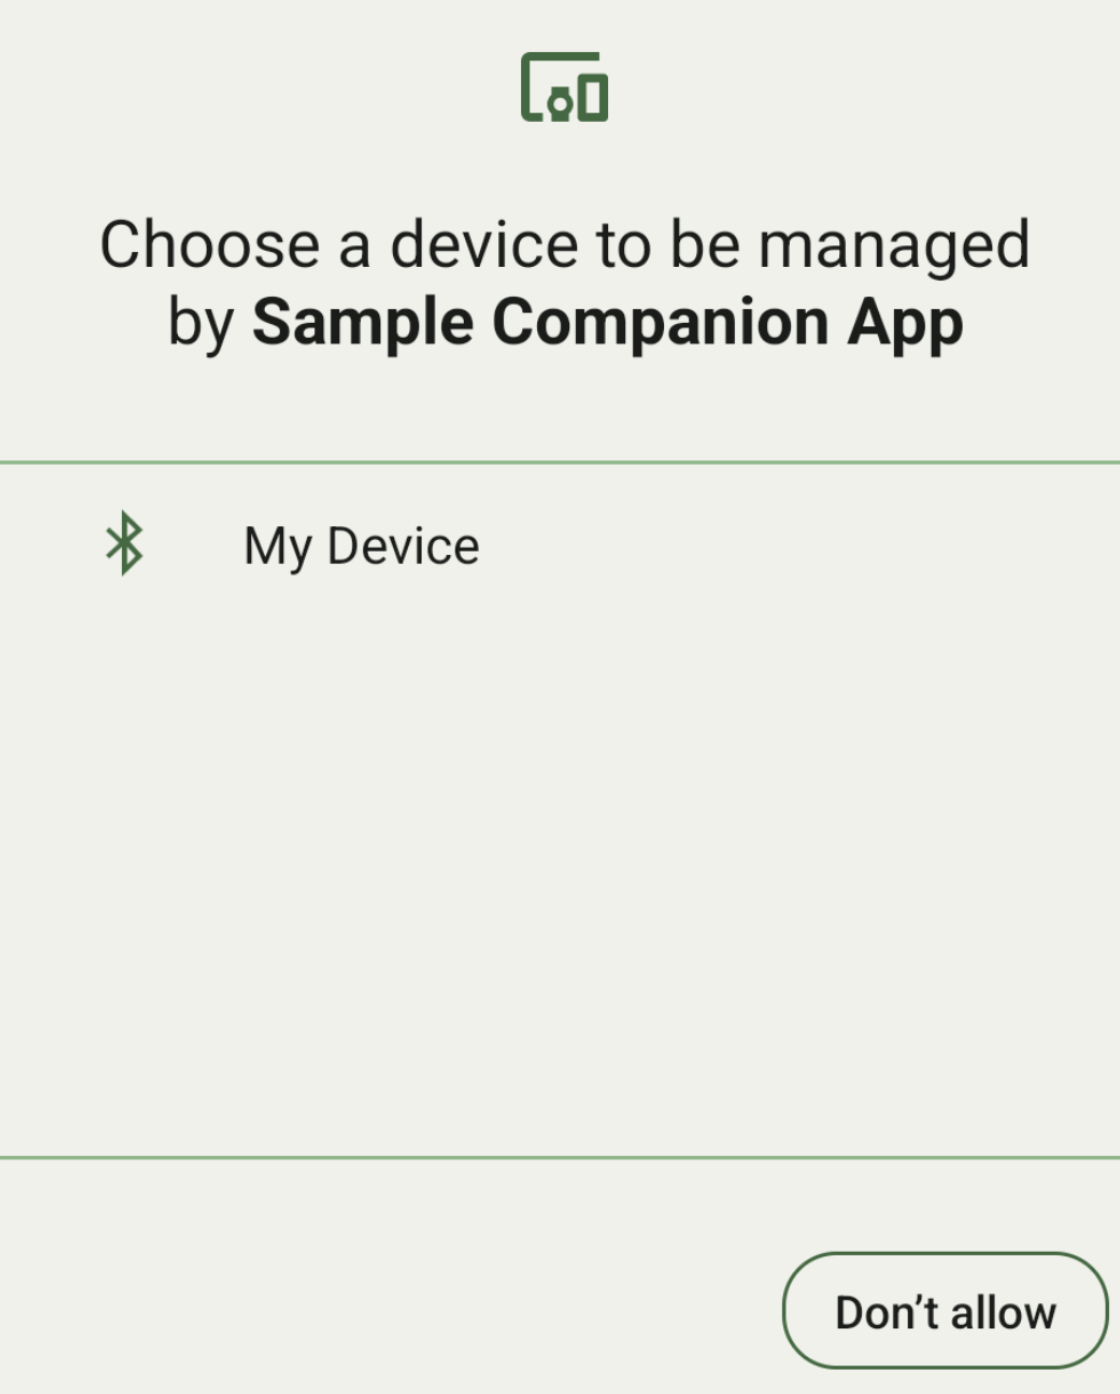 La pantalla de vinculación de dispositivos complementarios, limitada a una única opción de vinculación